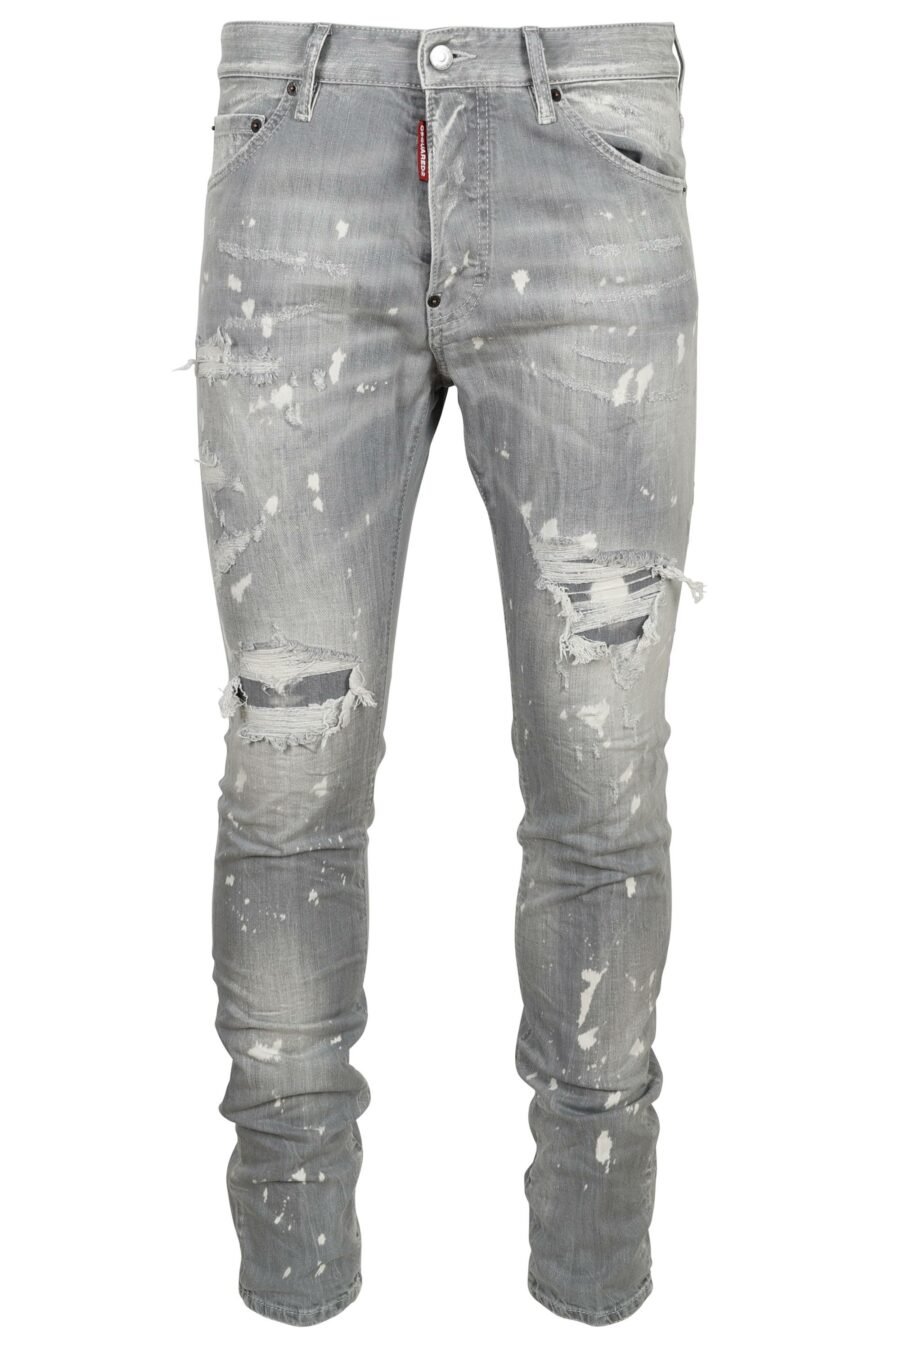 Pantalon en jean gris avec peinture blanche et déchirures - 8054148474218